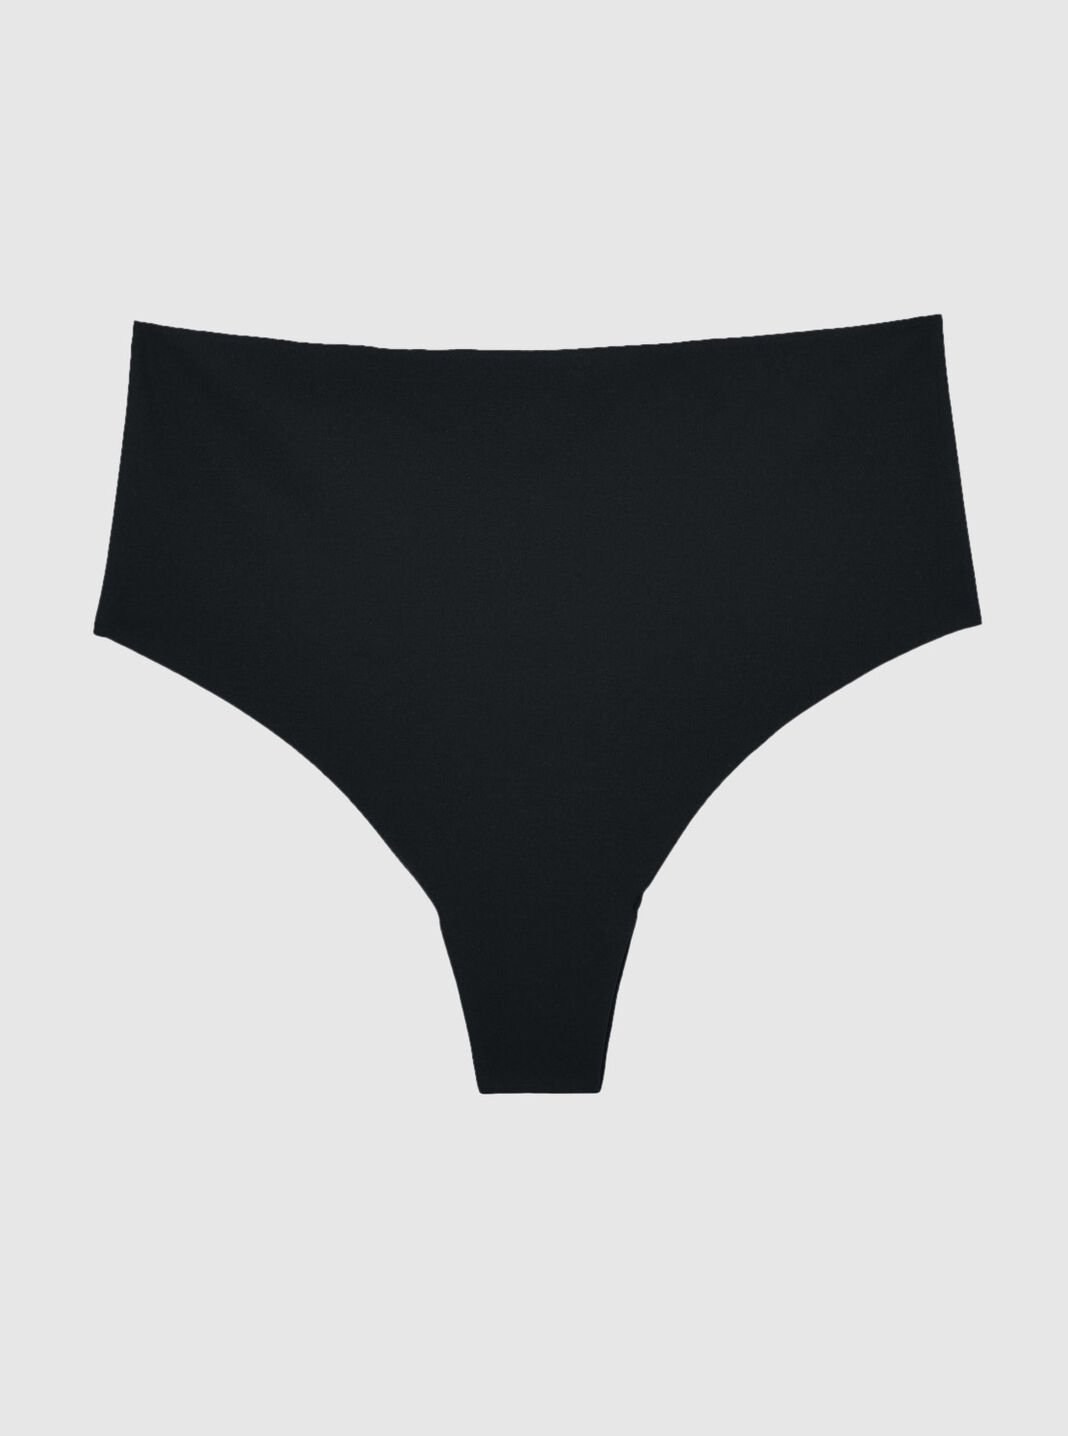 Shiusina Women's Underpants Open Crotch Panties Low Waist Lace Briefs  Underwear Orange M